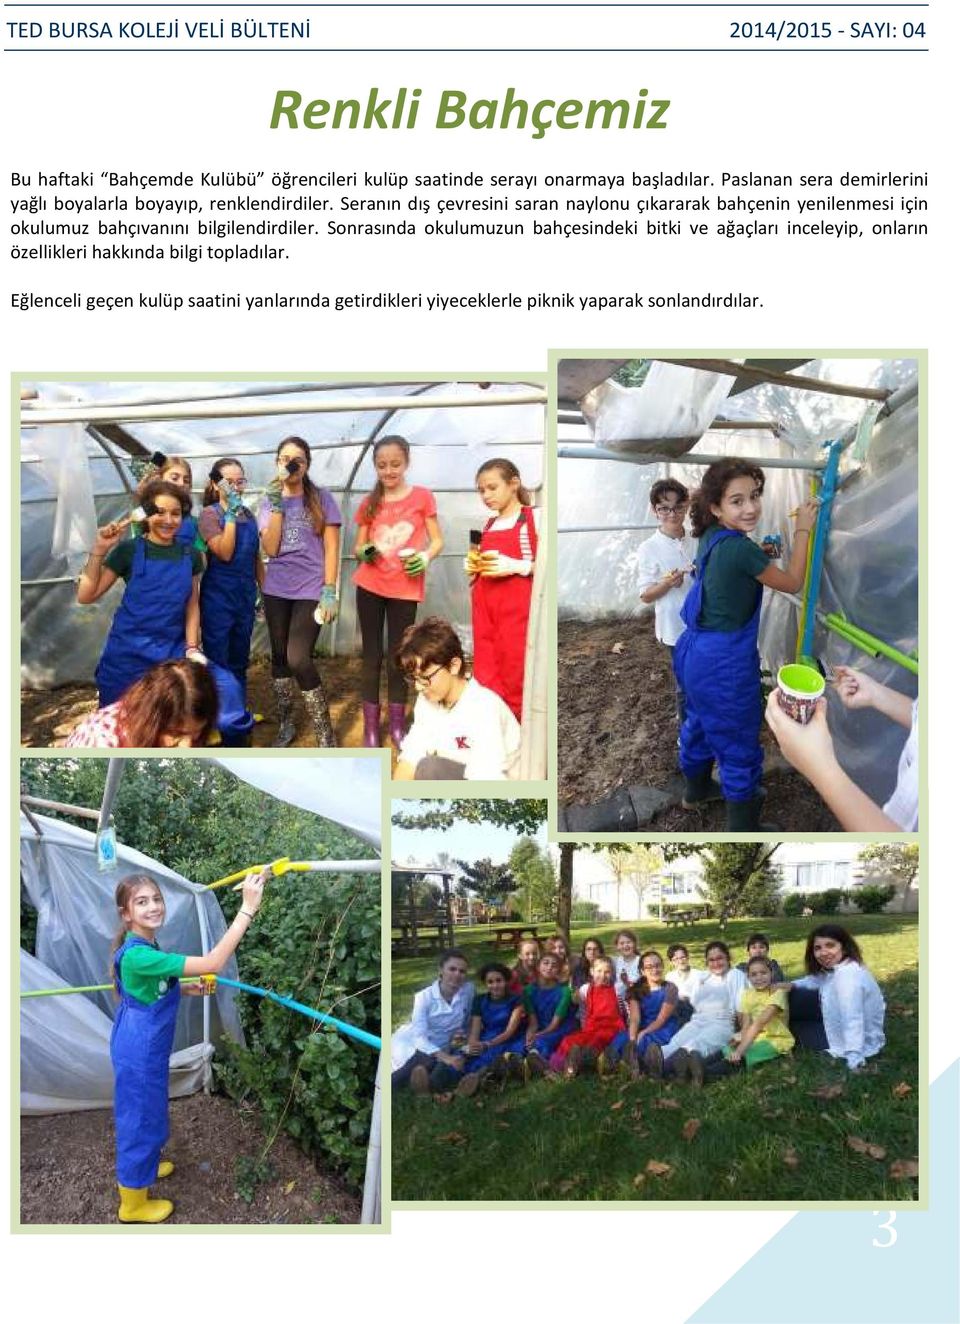 Seranın dış çevresini saran naylonu çıkararak bahçenin yenilenmesi için okulumuz bahçıvanını bilgilendirdiler.